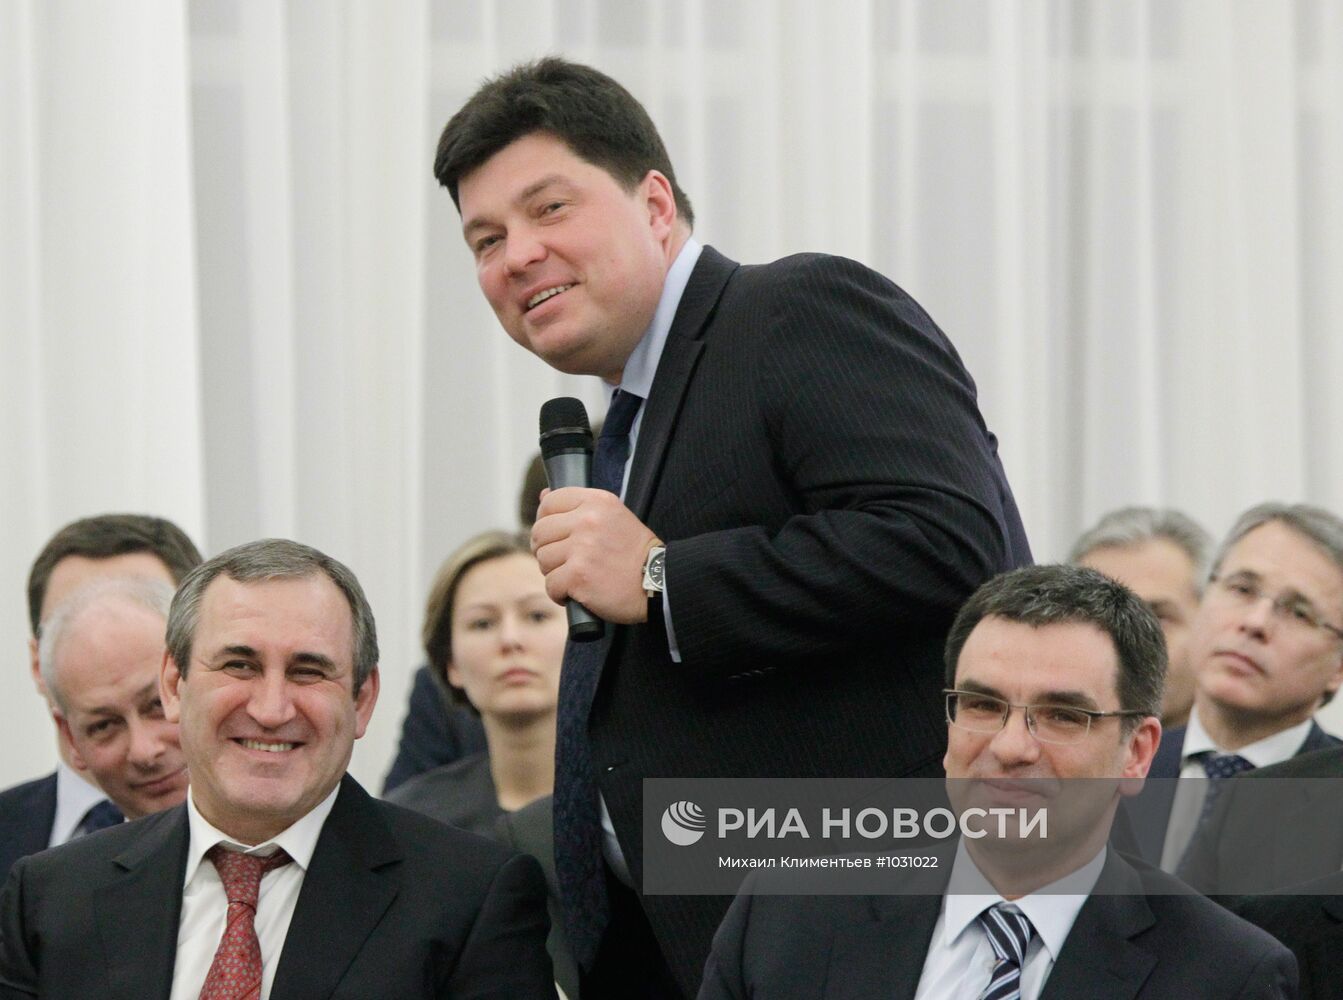 Встреча Д. Медведева с Общественным комитетом сторонников